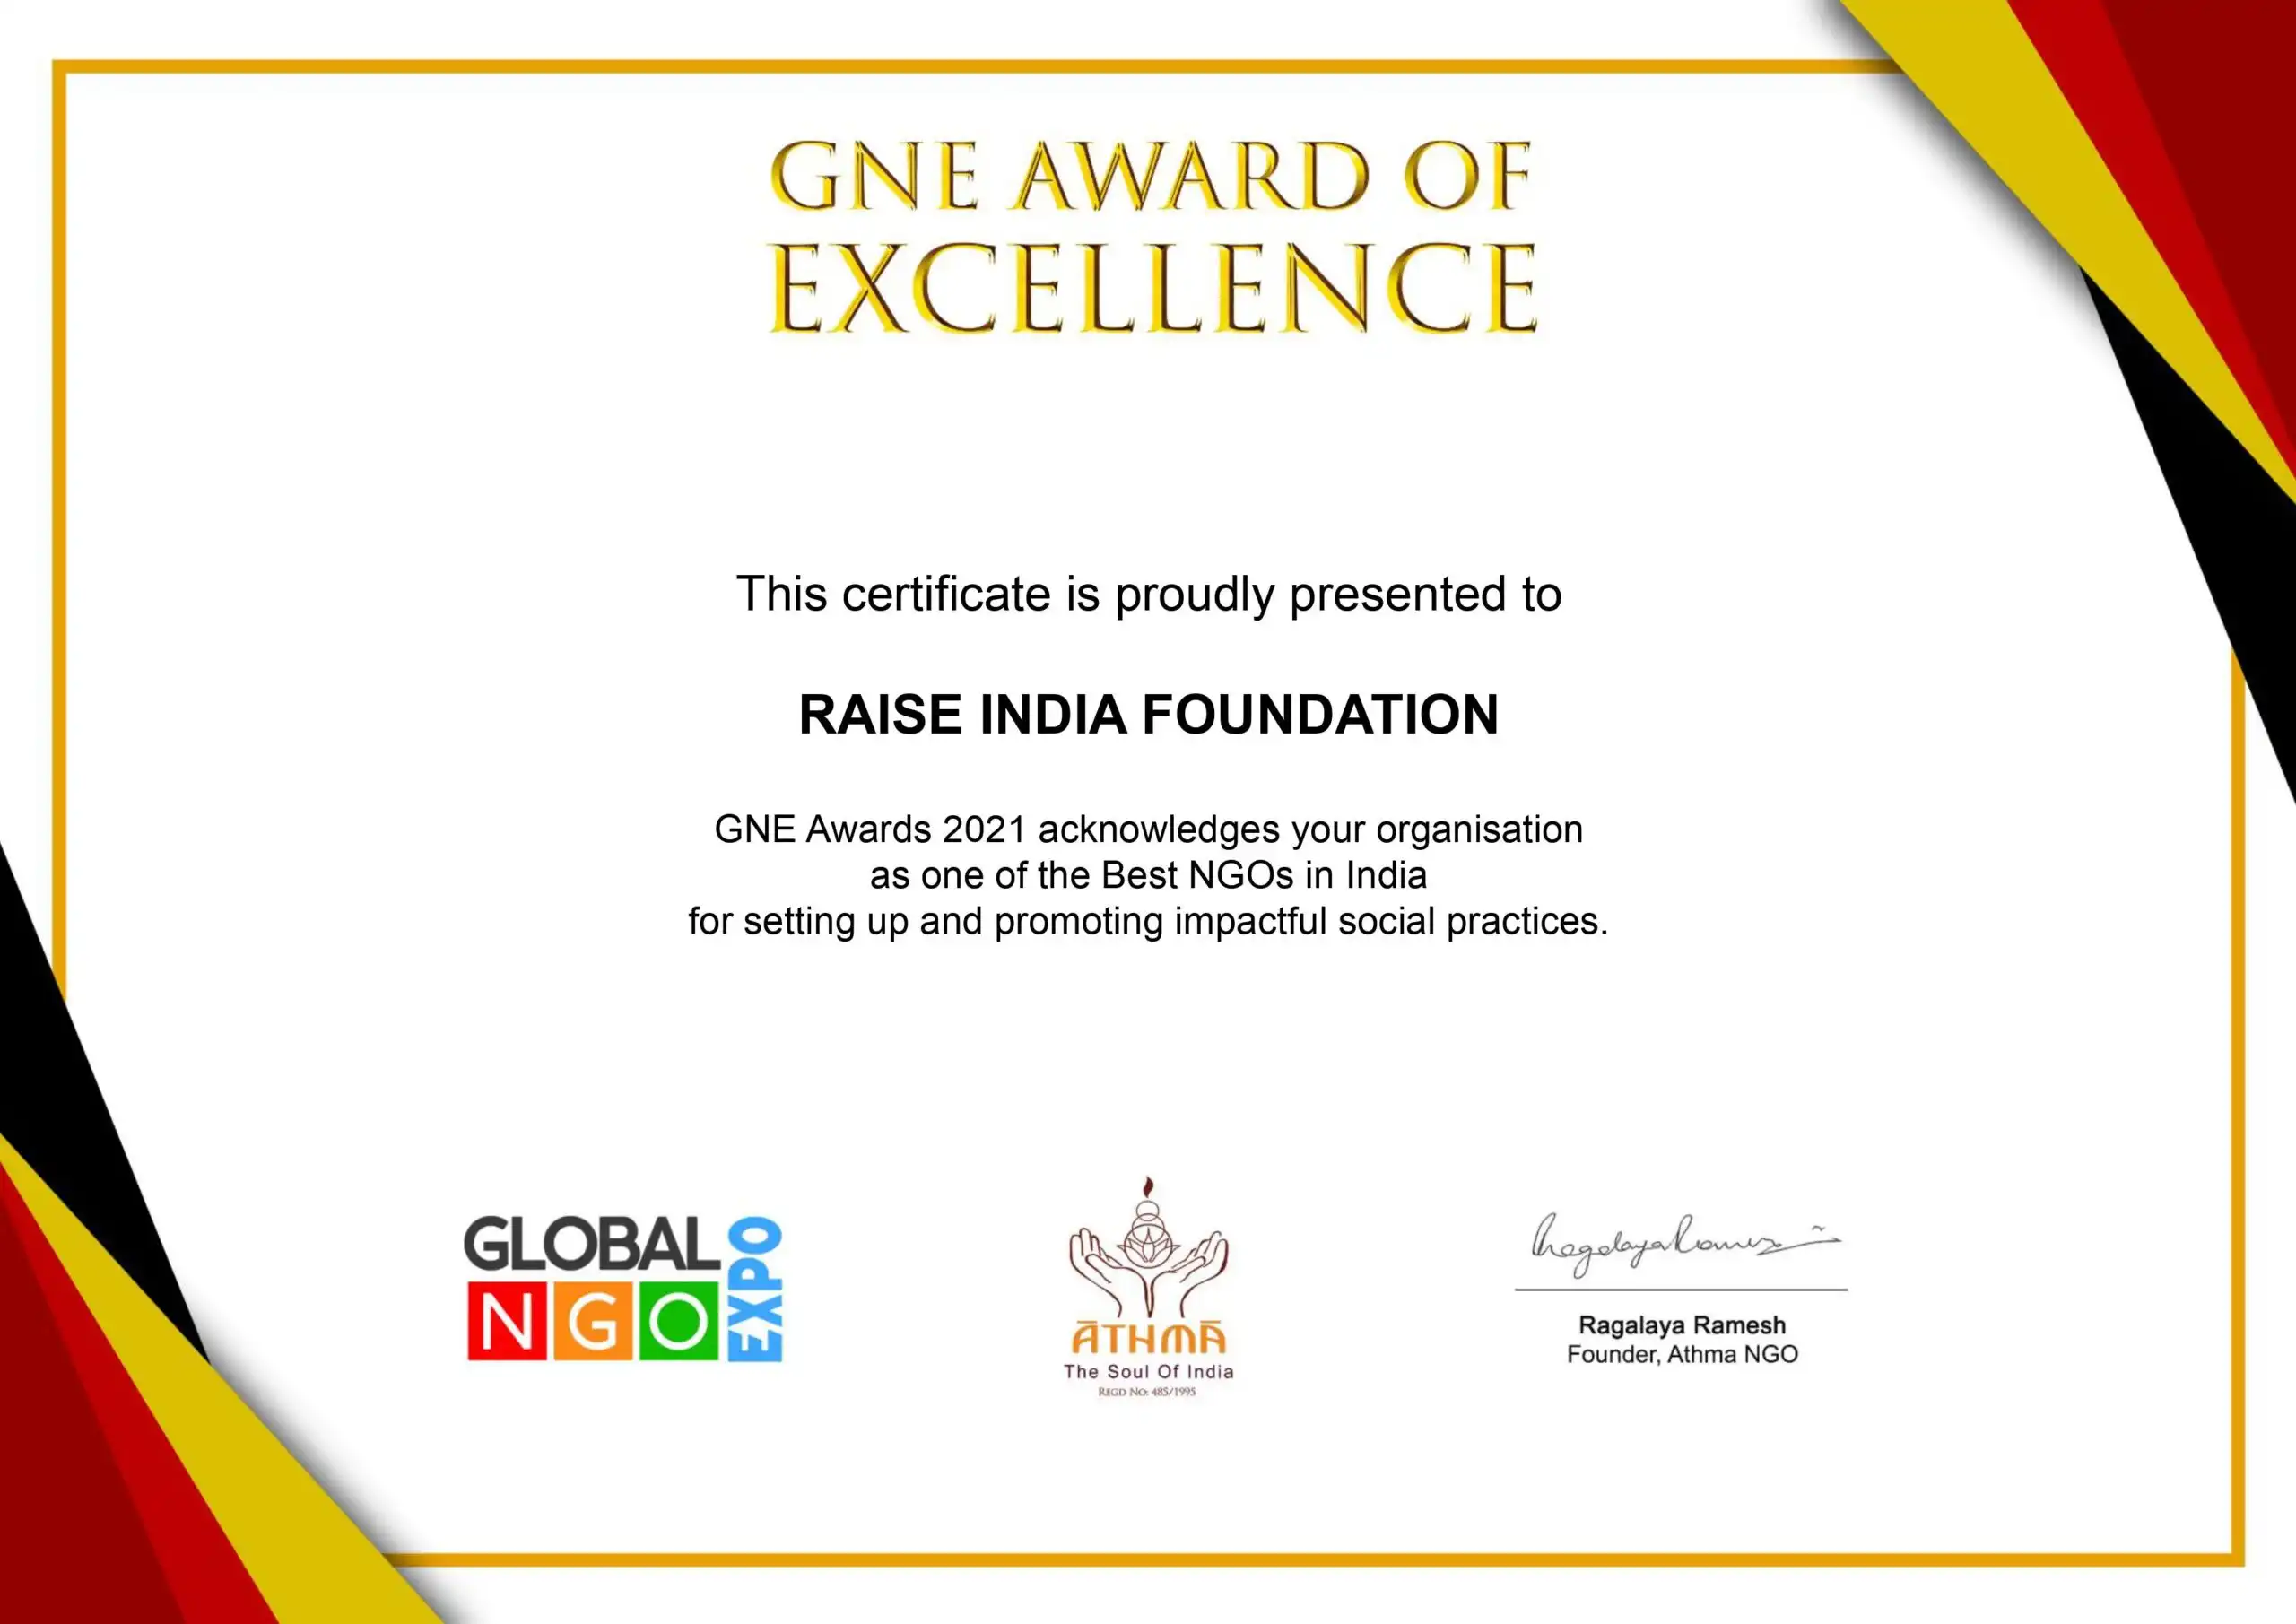 Global Ngo Expo Awards - Awards